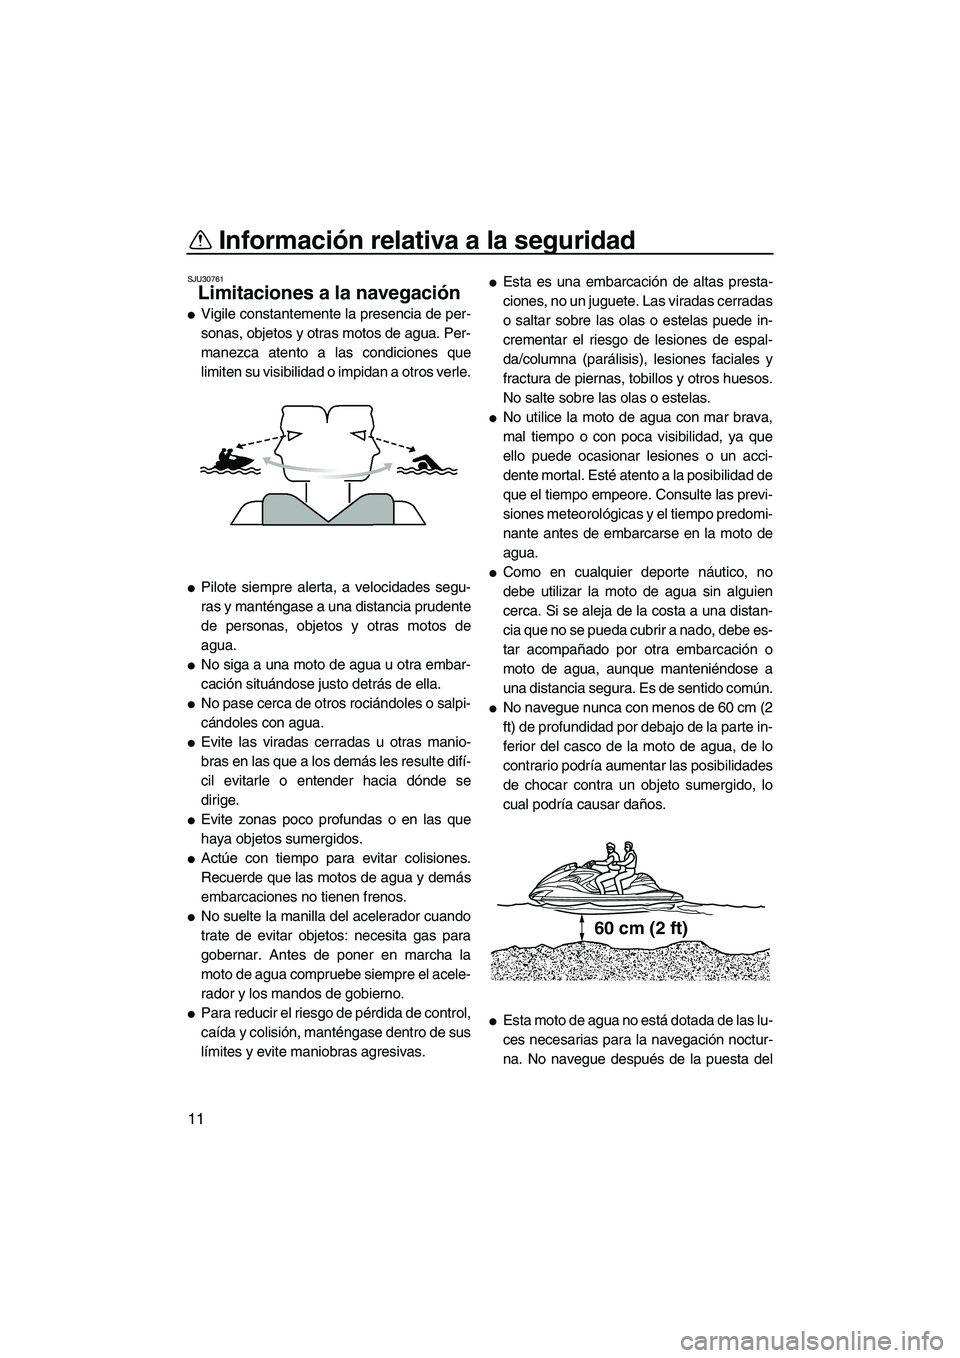 YAMAHA FZR 2009  Manuale de Empleo (in Spanish) Información relativa a la seguridad
11
SJU30761
Limitaciones a la navegación 
Vigile constantemente la presencia de per-
sonas, objetos y otras motos de agua. Per-
manezca atento a las condiciones 